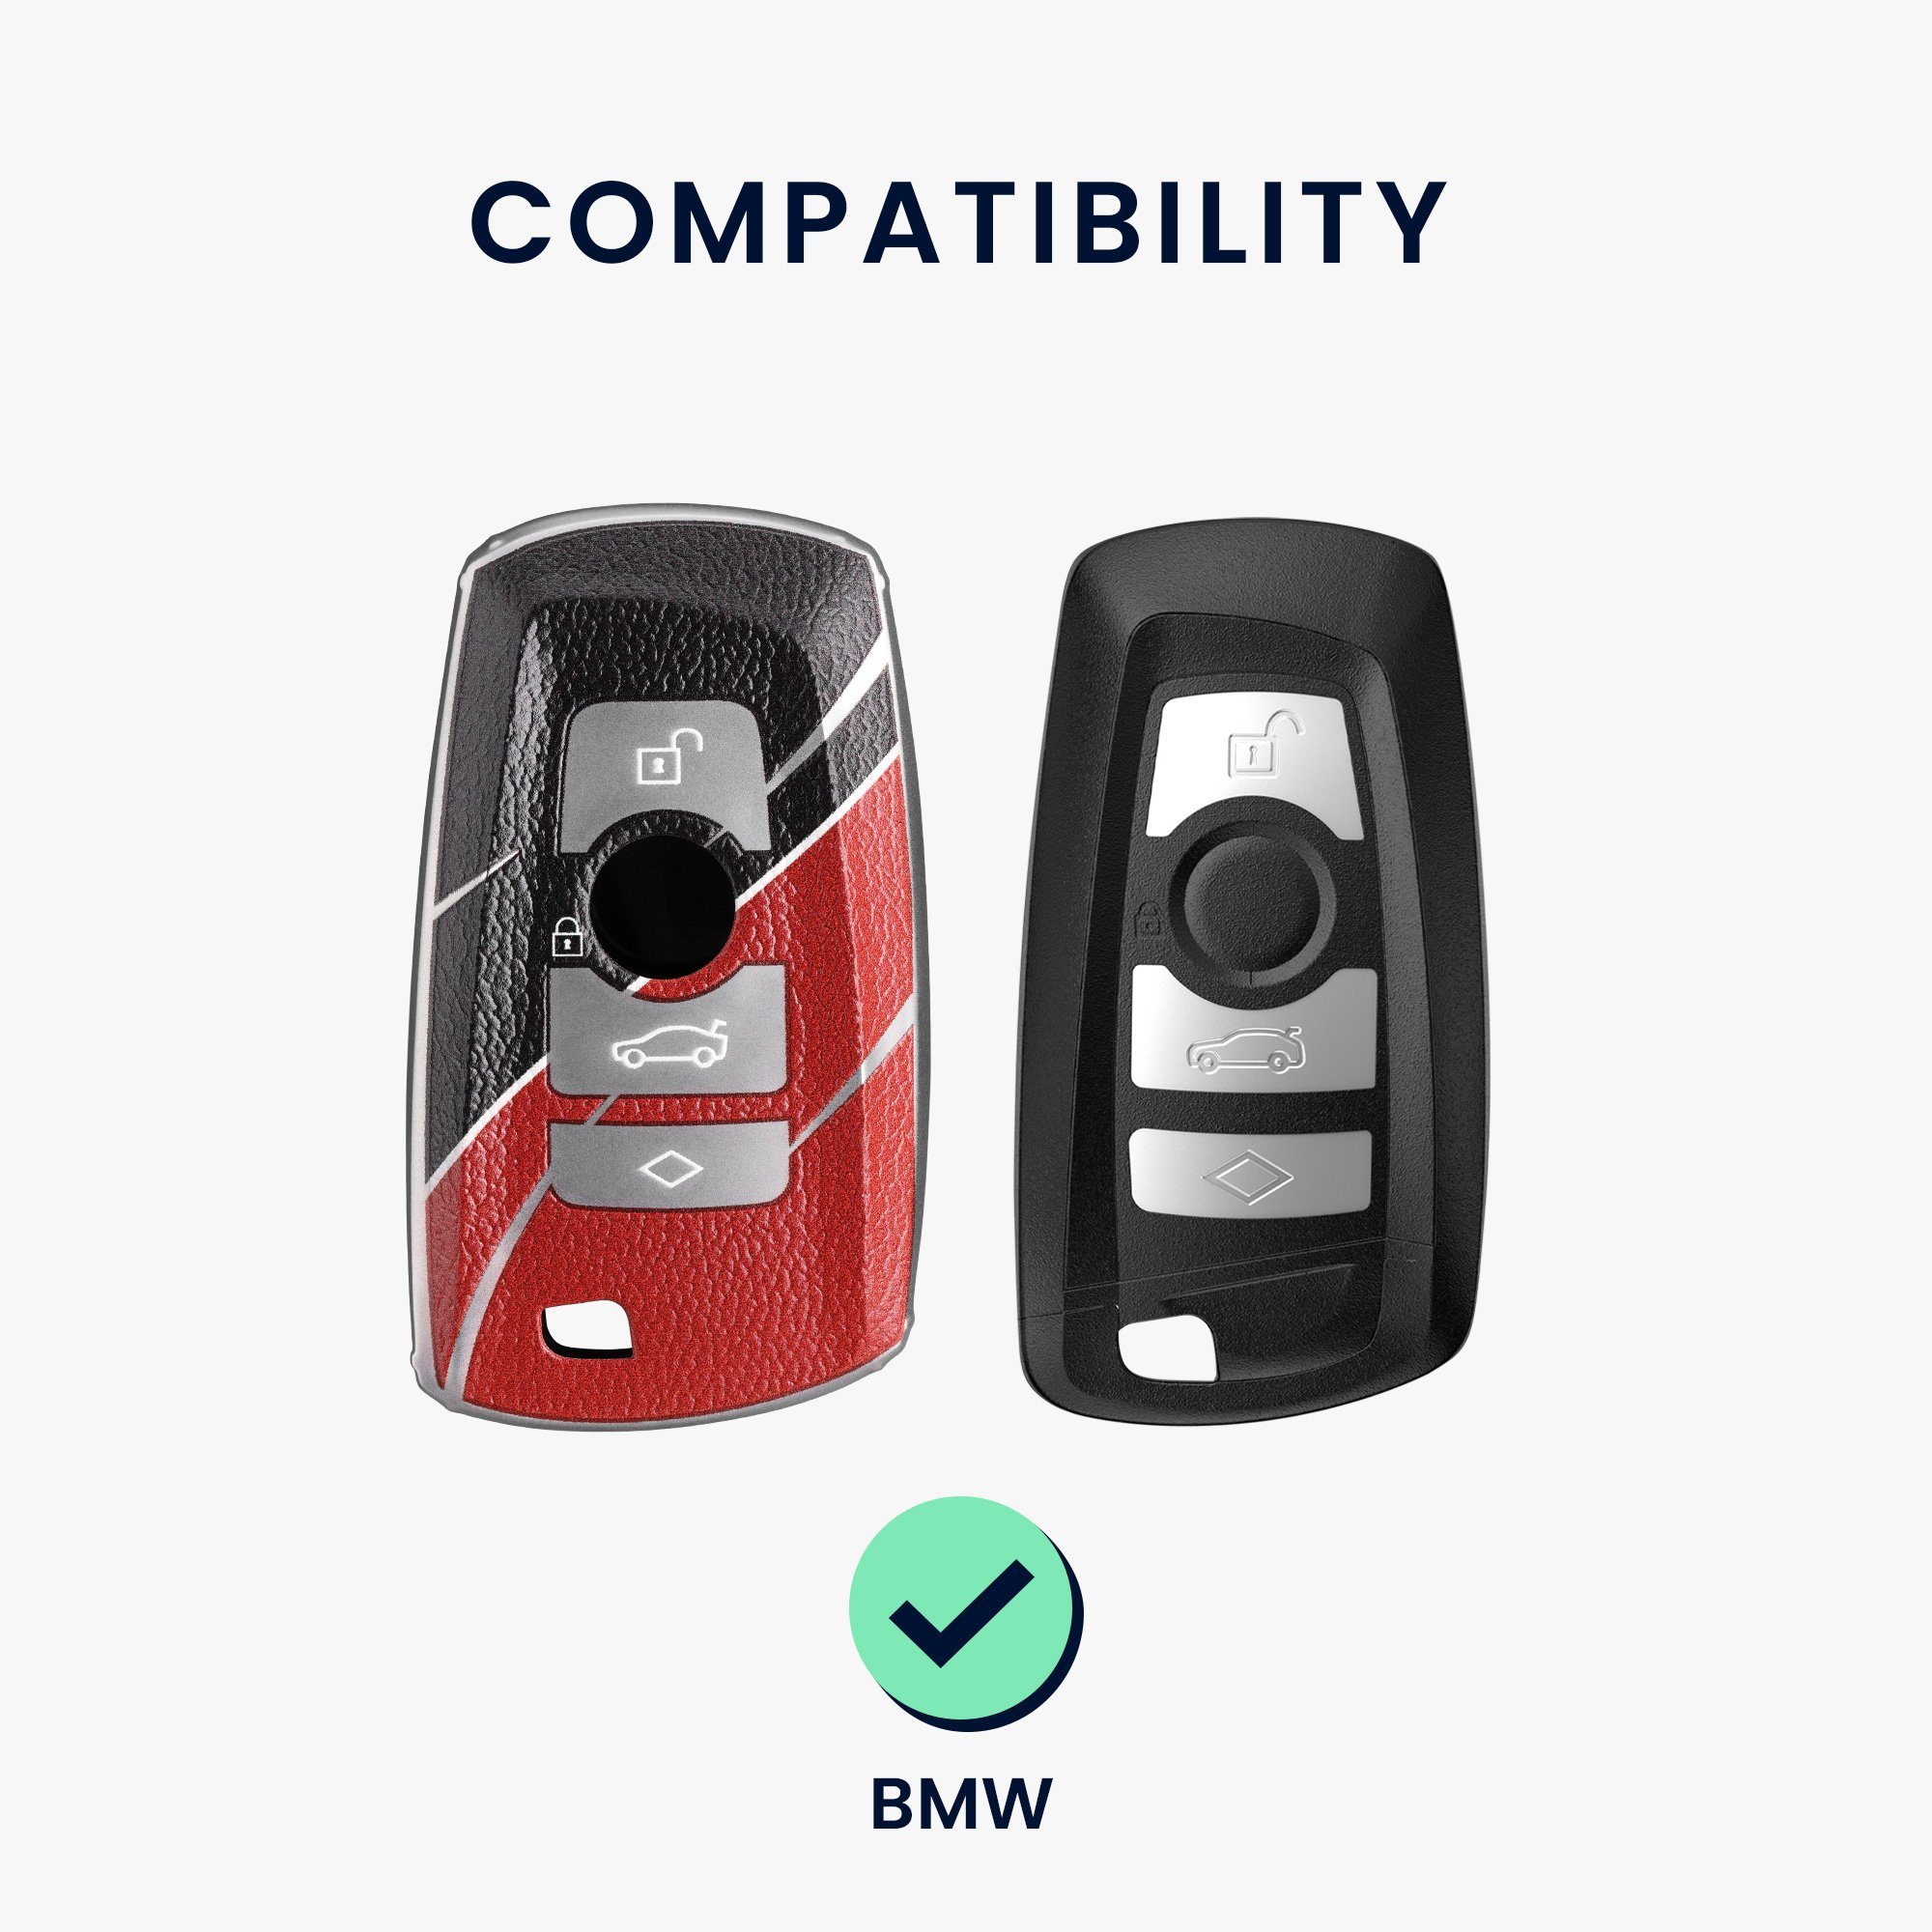 für BMW, TPU Grau Autoschlüssel für Hülle Schlüsselhülle Schlüsseltasche BMW kwmobile Cover Schutzhülle